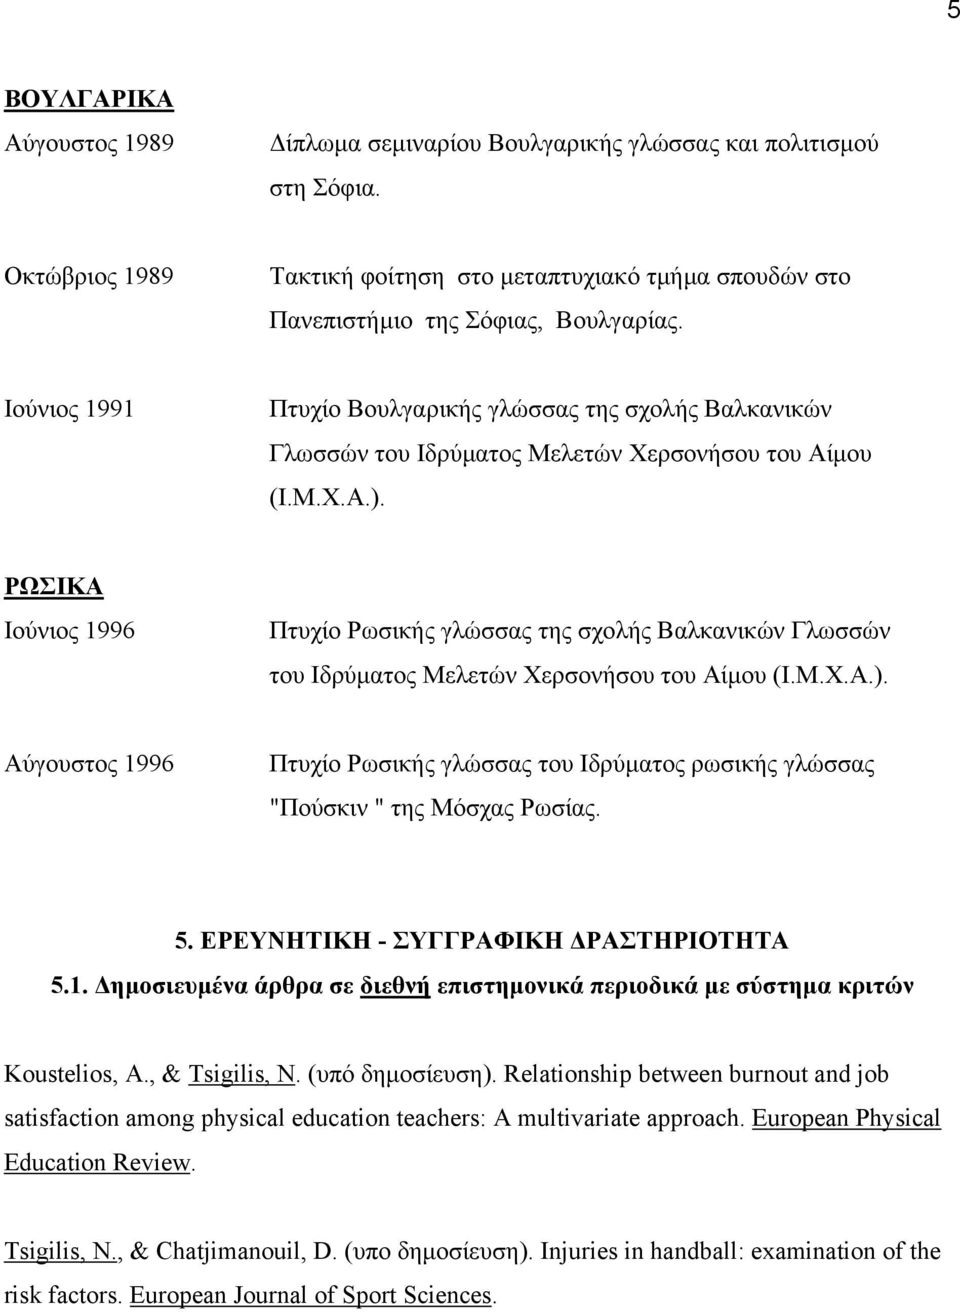 ΡΩΣΙΚΑ Ιούνιος 1996 Πτυχίο Ρωσικής γλώσσας της σχολής Βαλκανικών Γλωσσών του Ιδρύµατος Μελετών Χερσονήσου του Αίµου (Ι.Μ.Χ.Α.).